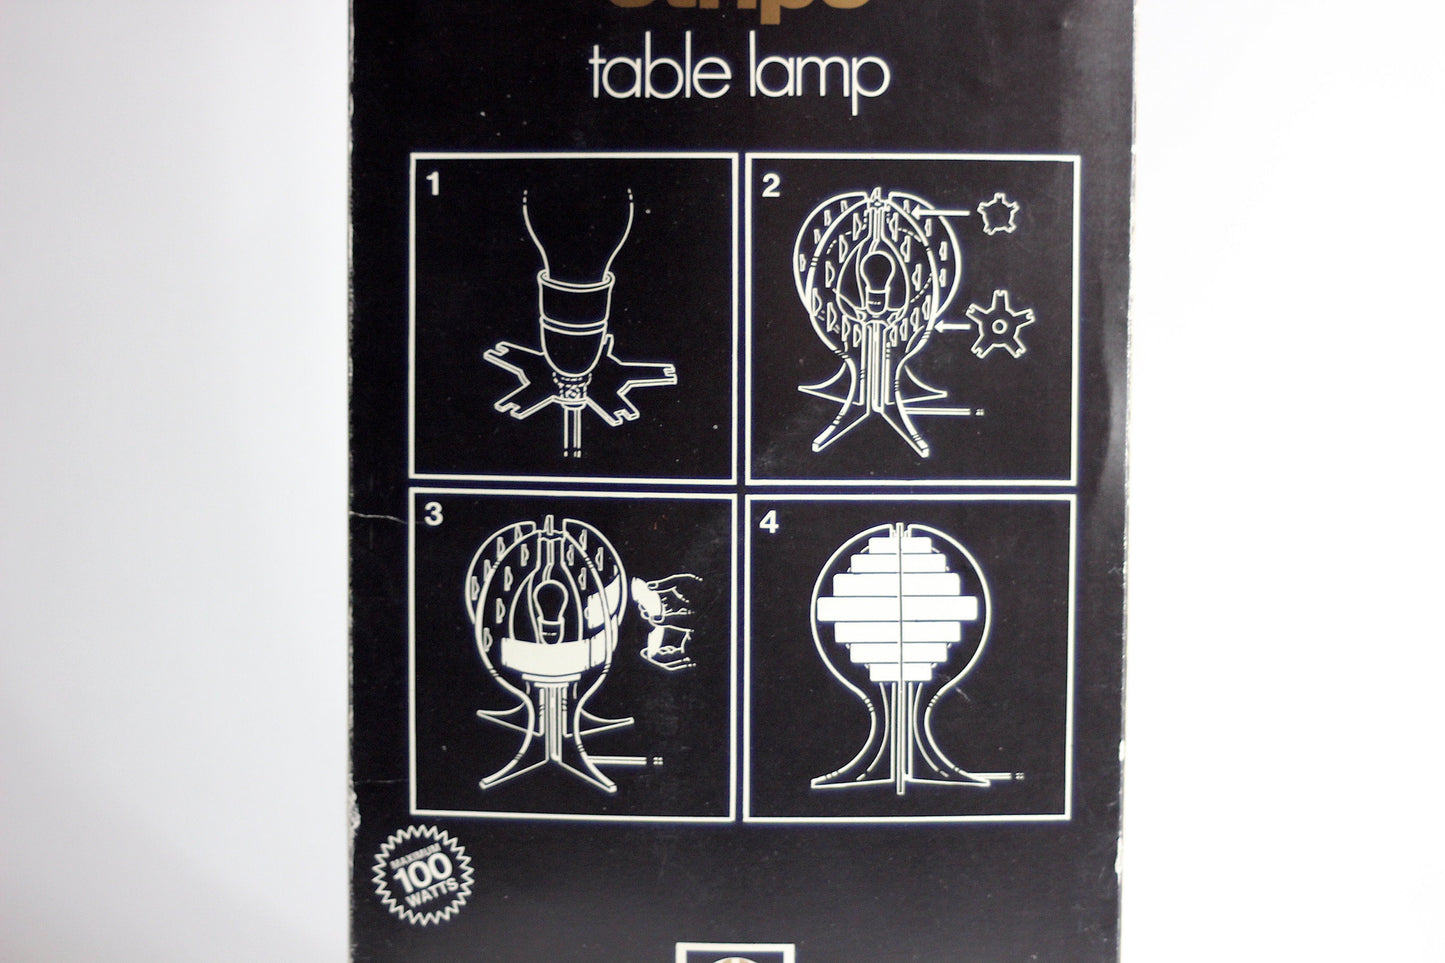 STRIPS table lamp. Flemming Brylle & Preben Jacobsen. Quality System. Denmark, 1965.